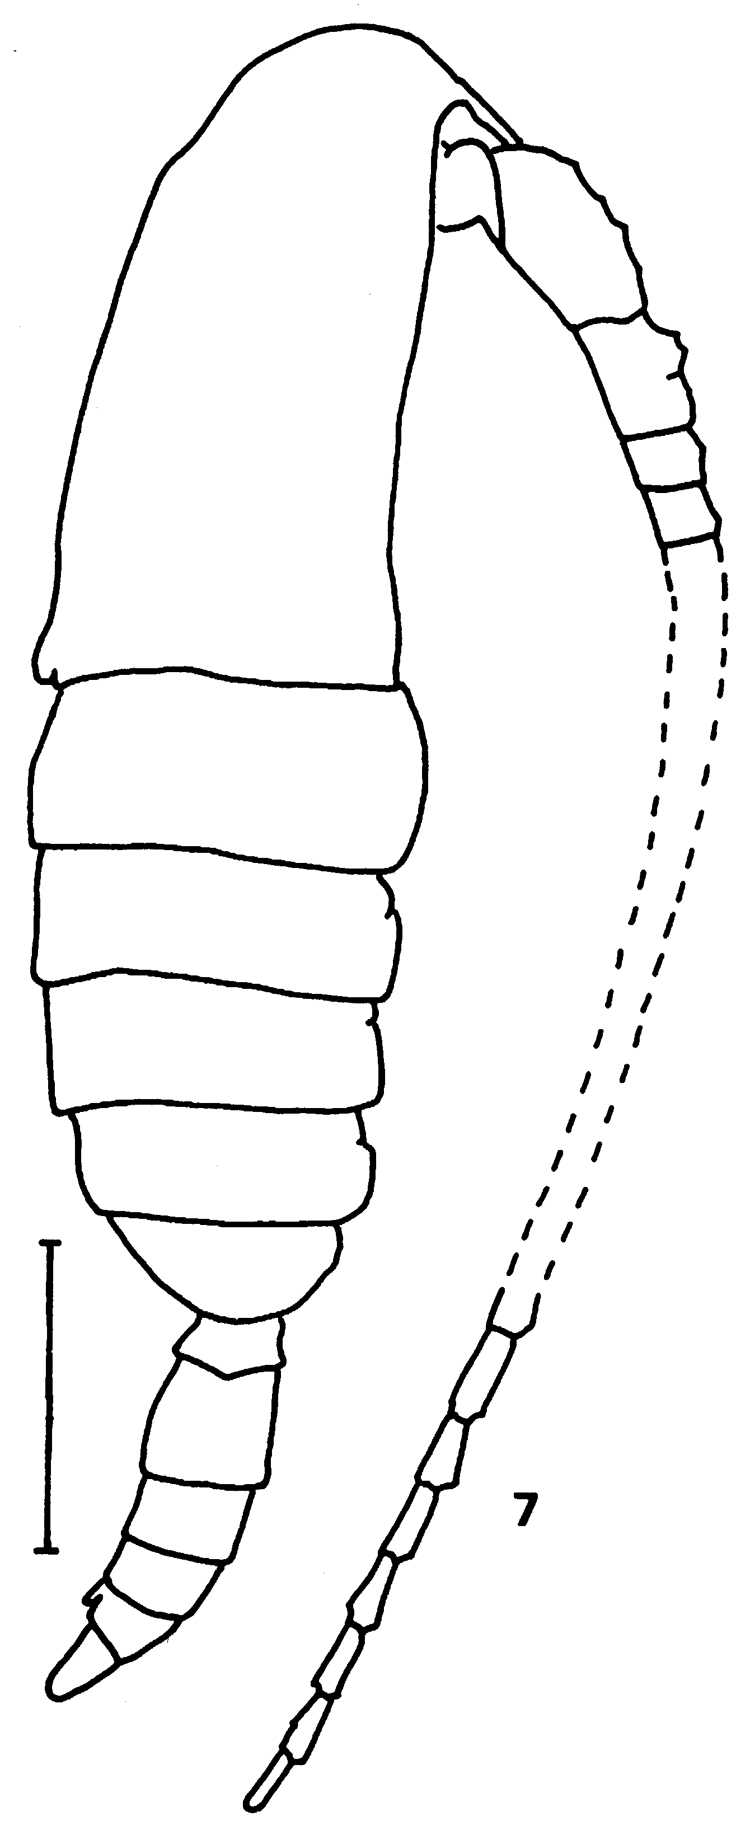 Espce Calanus sinicus - Planche 8 de figures morphologiques